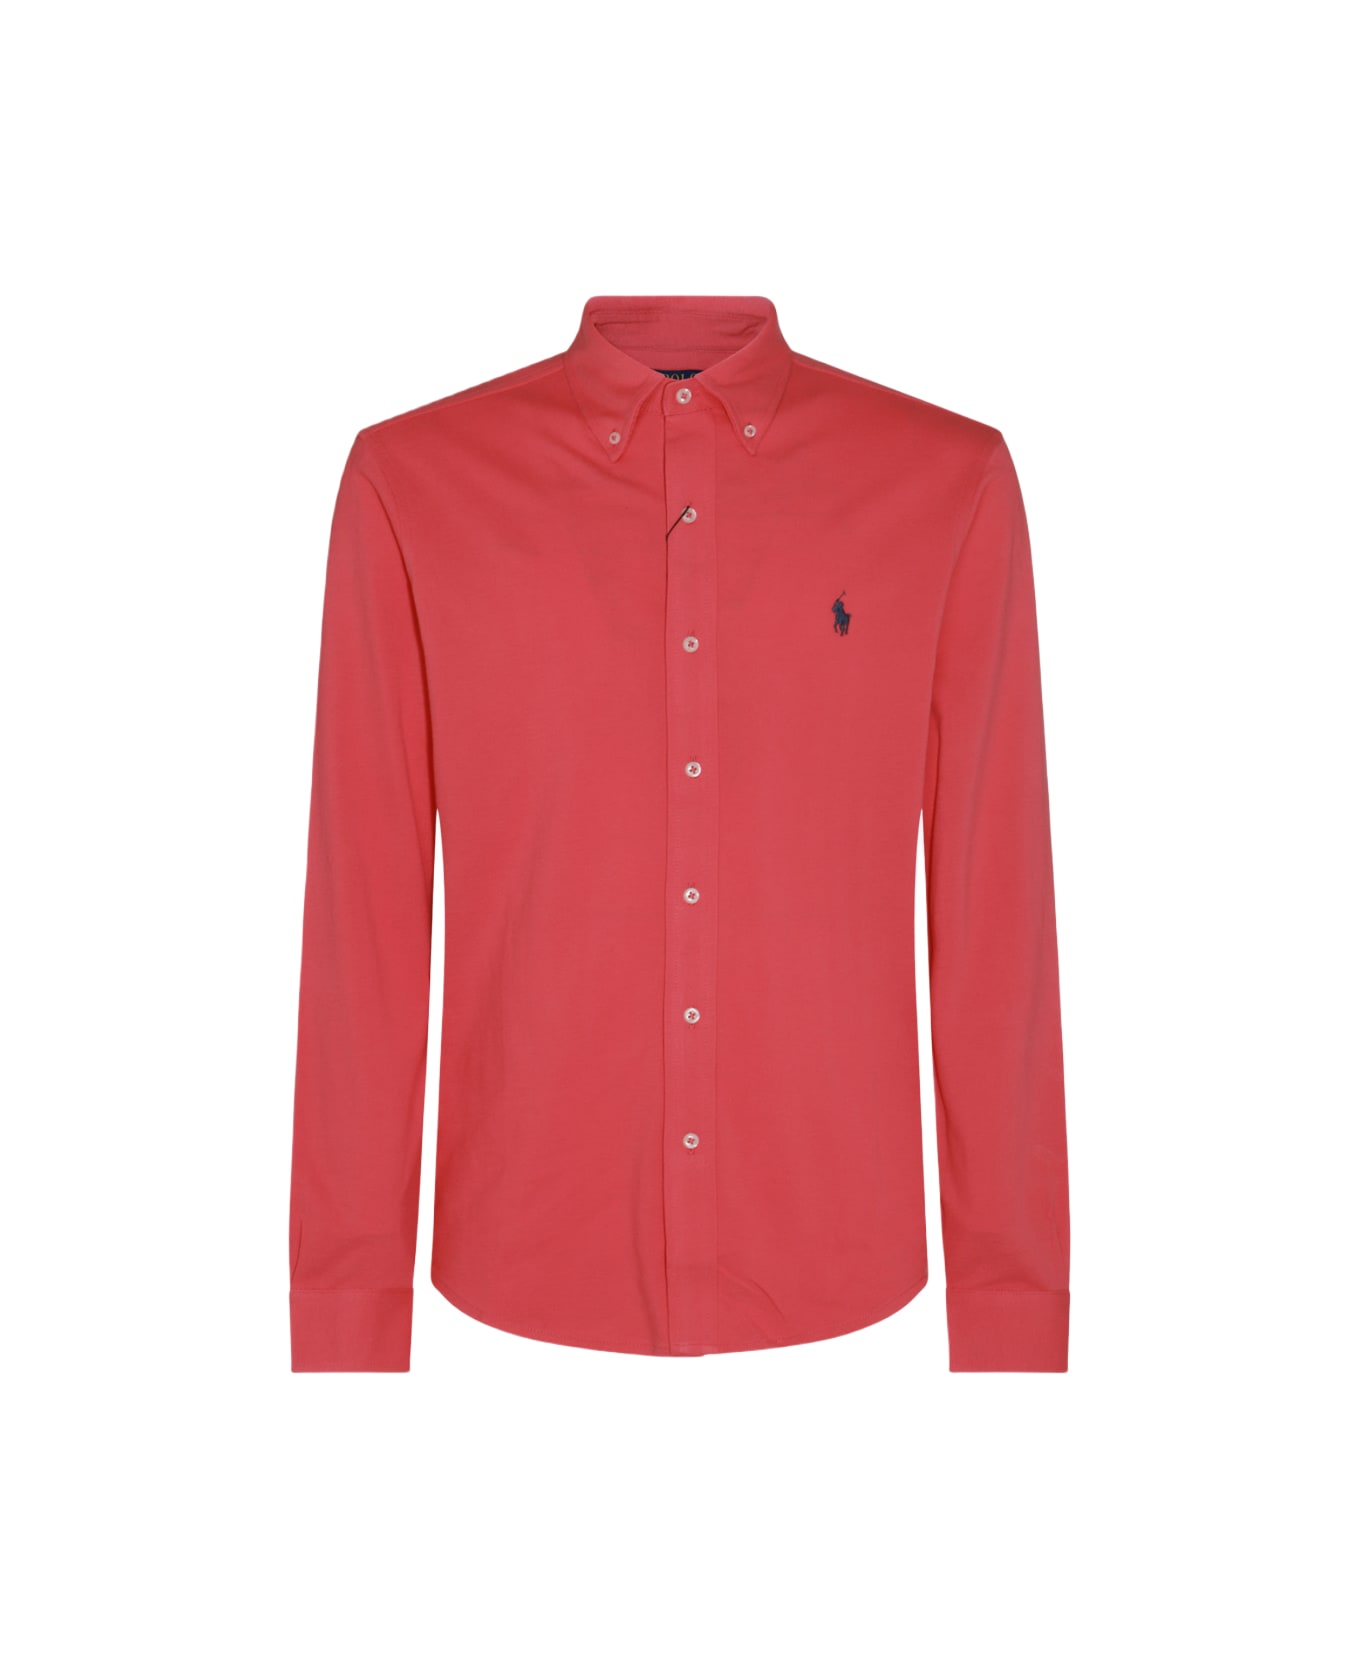 Polo Ralph Lauren Red Cotton Shirt Polo Ralph Lauren - RED